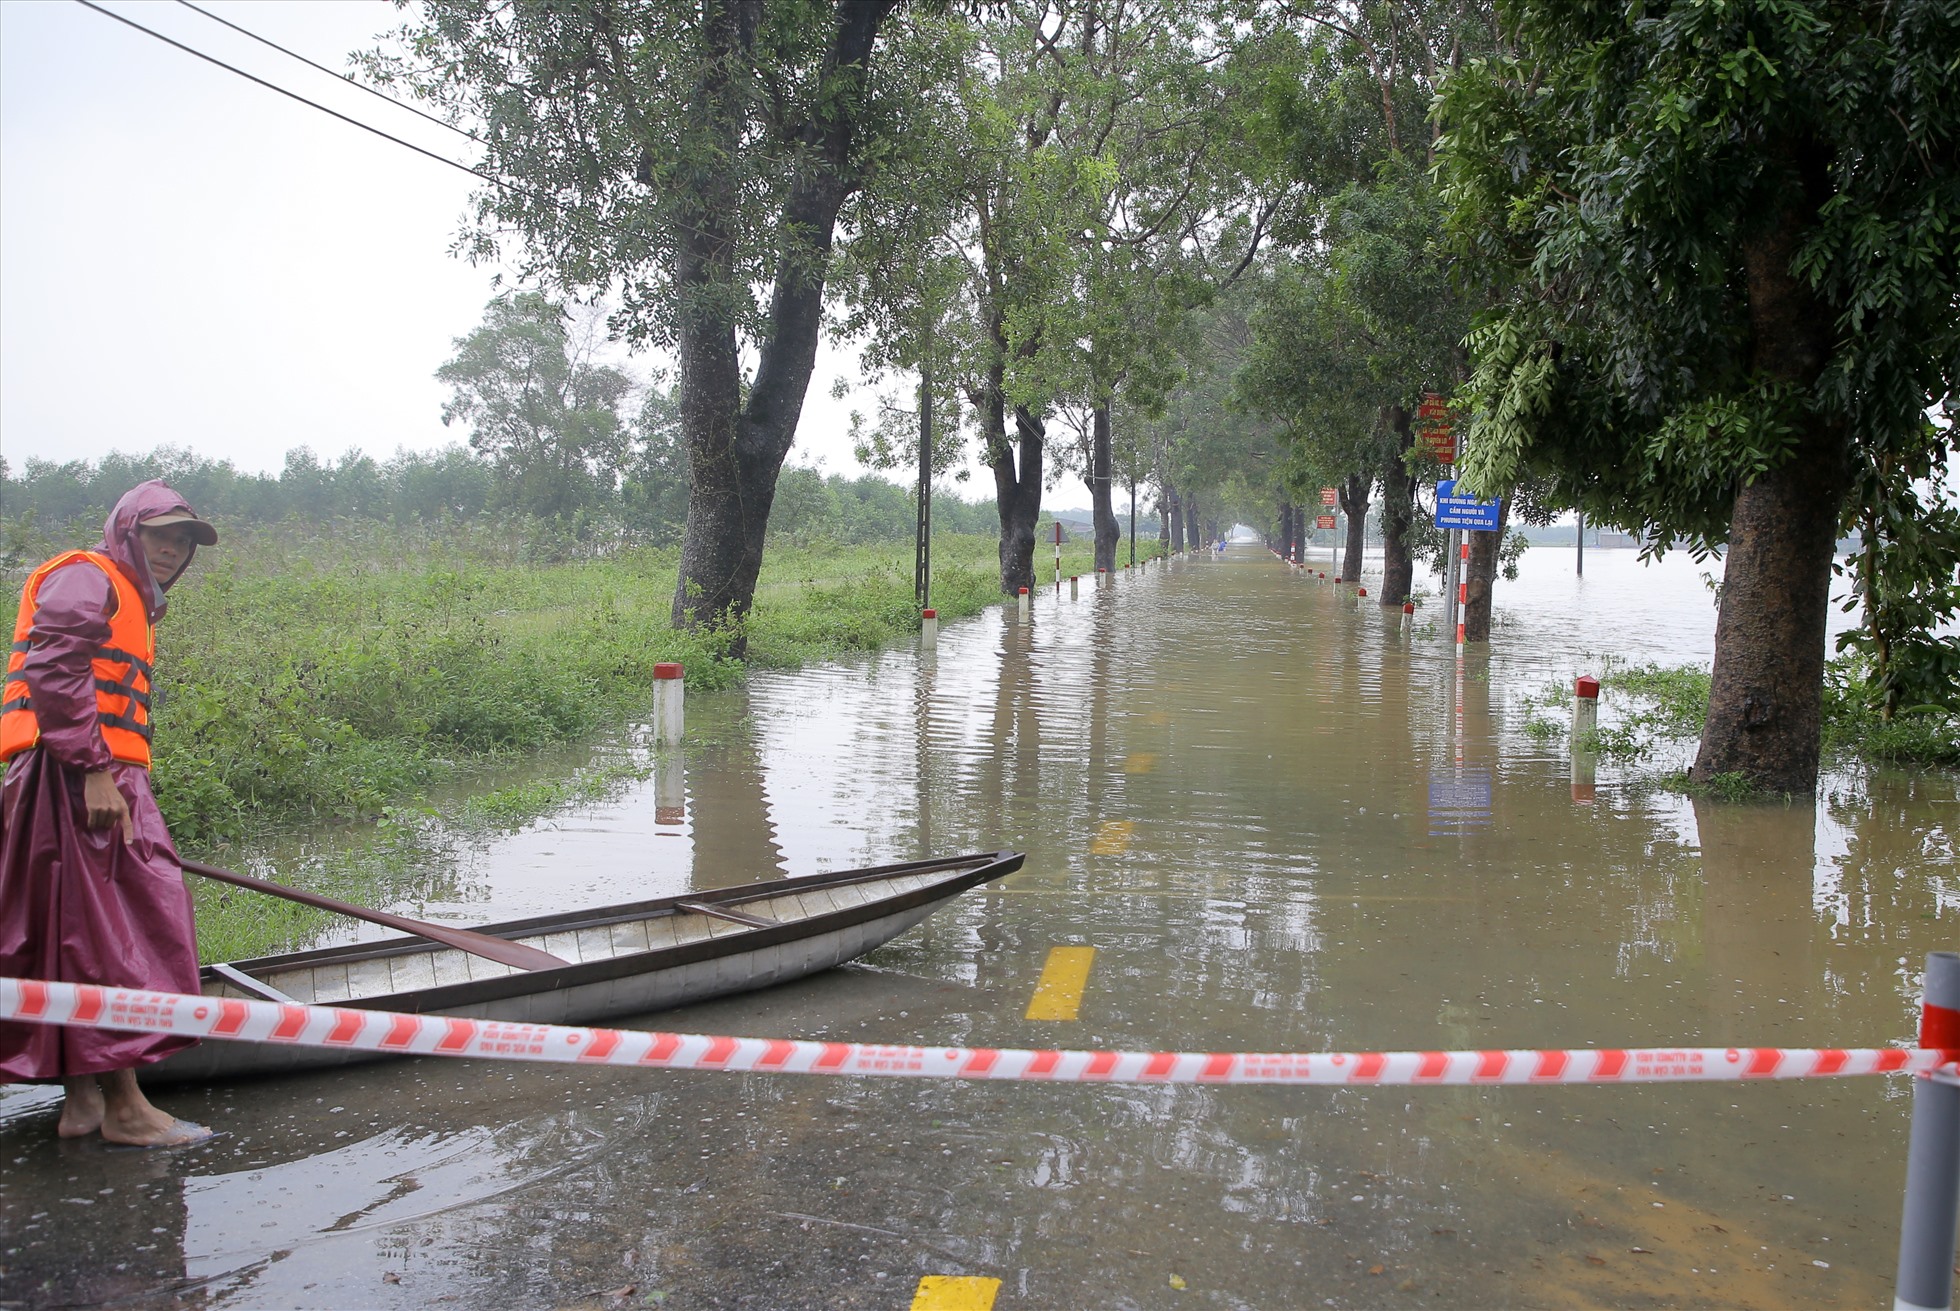 Tuyến đường đi vào xã Hải Thượng (huyện Hải Lăng, tỉnh Quảng Trị) vẫn còn ngập sâu. Chính quyền phải chặn đường, đặt biển cảnh báo cấm các loại phương tiện qua lại.